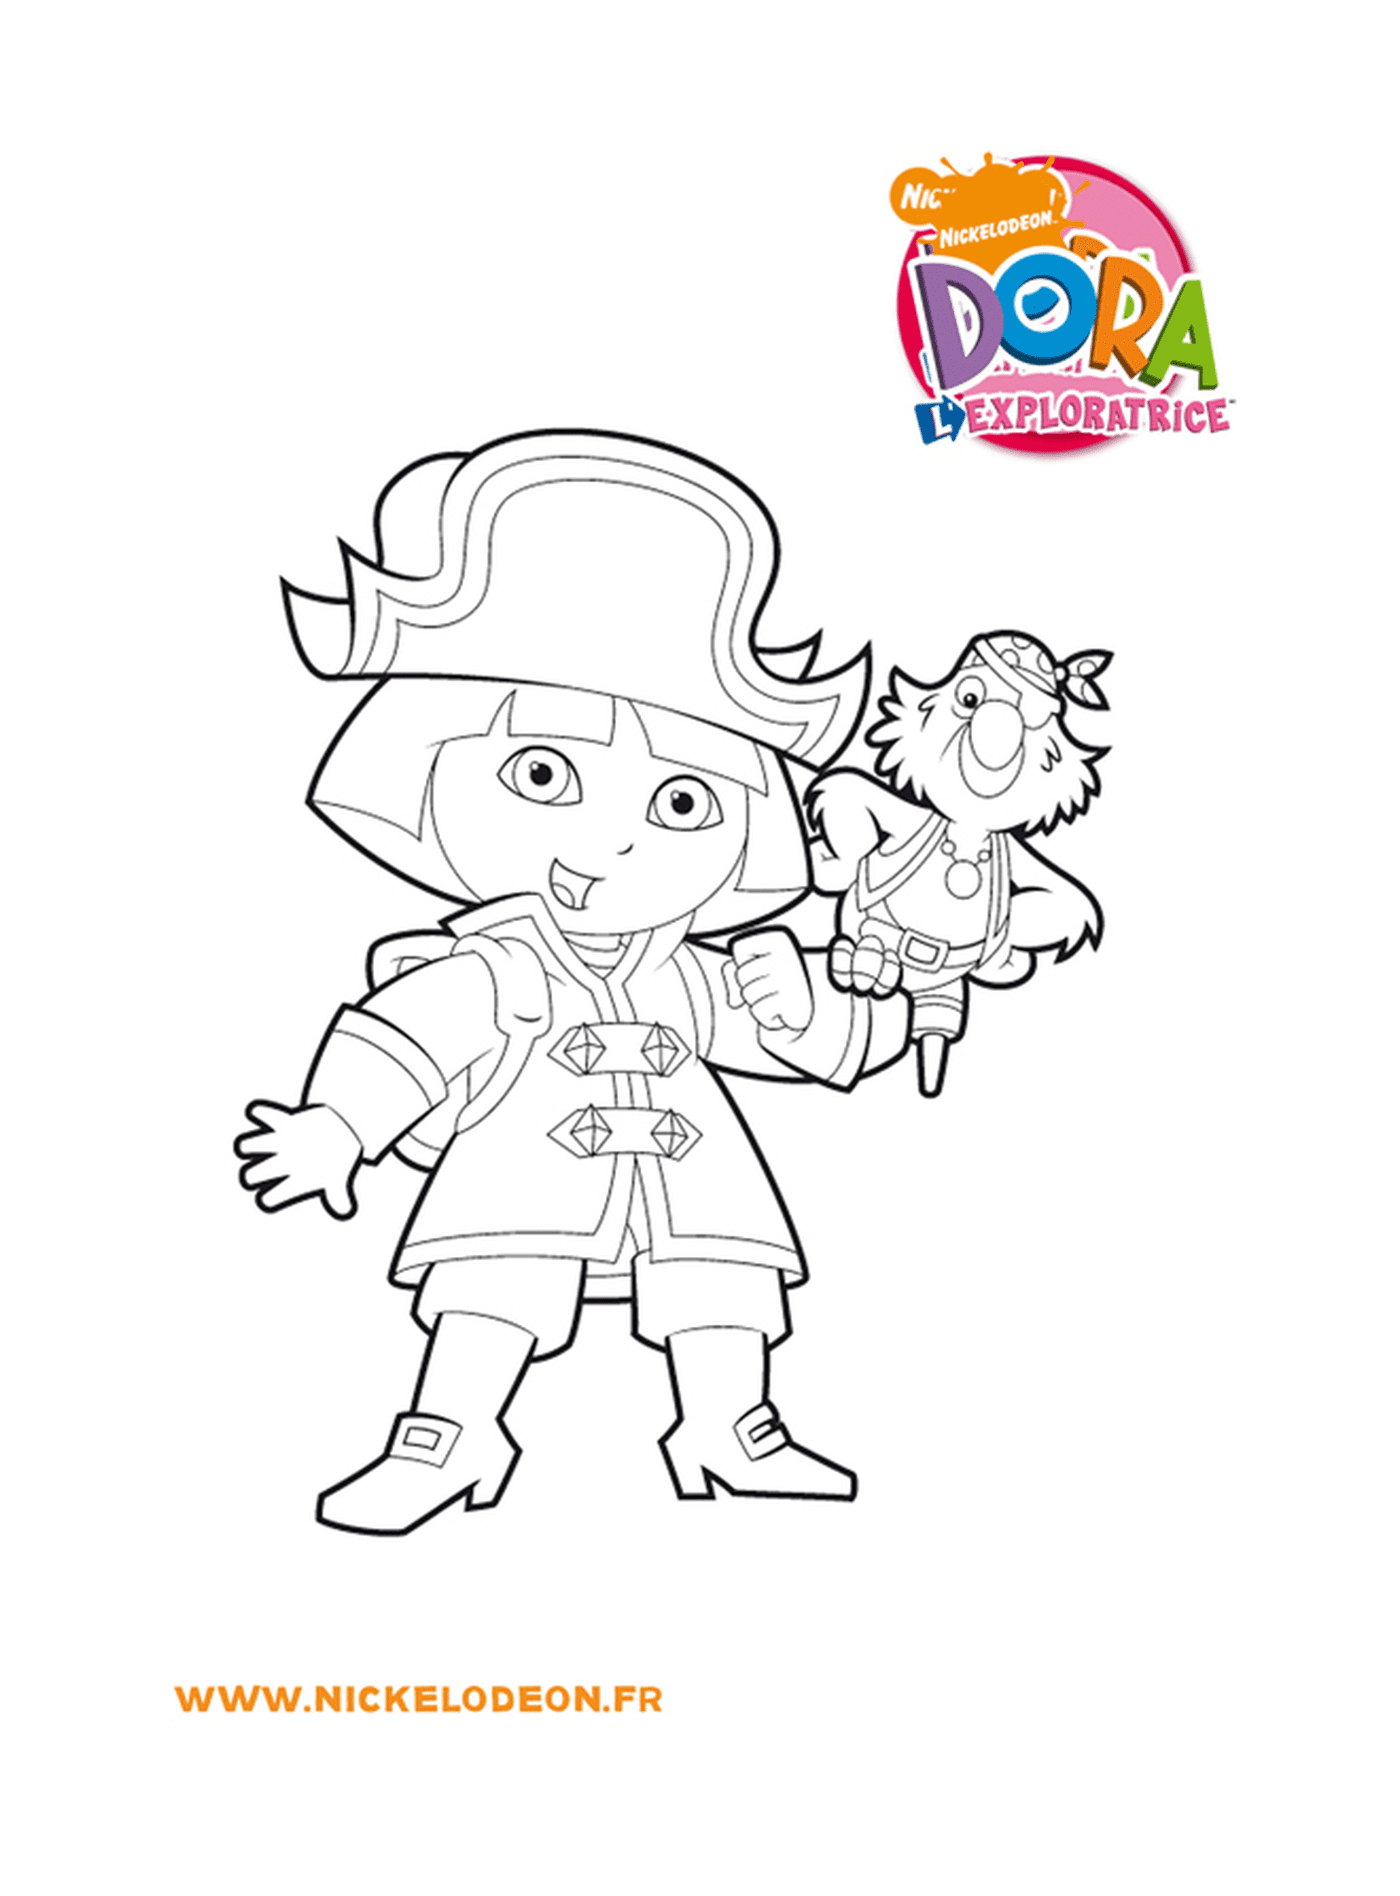  Dora si trasforma in un pirata impavido 